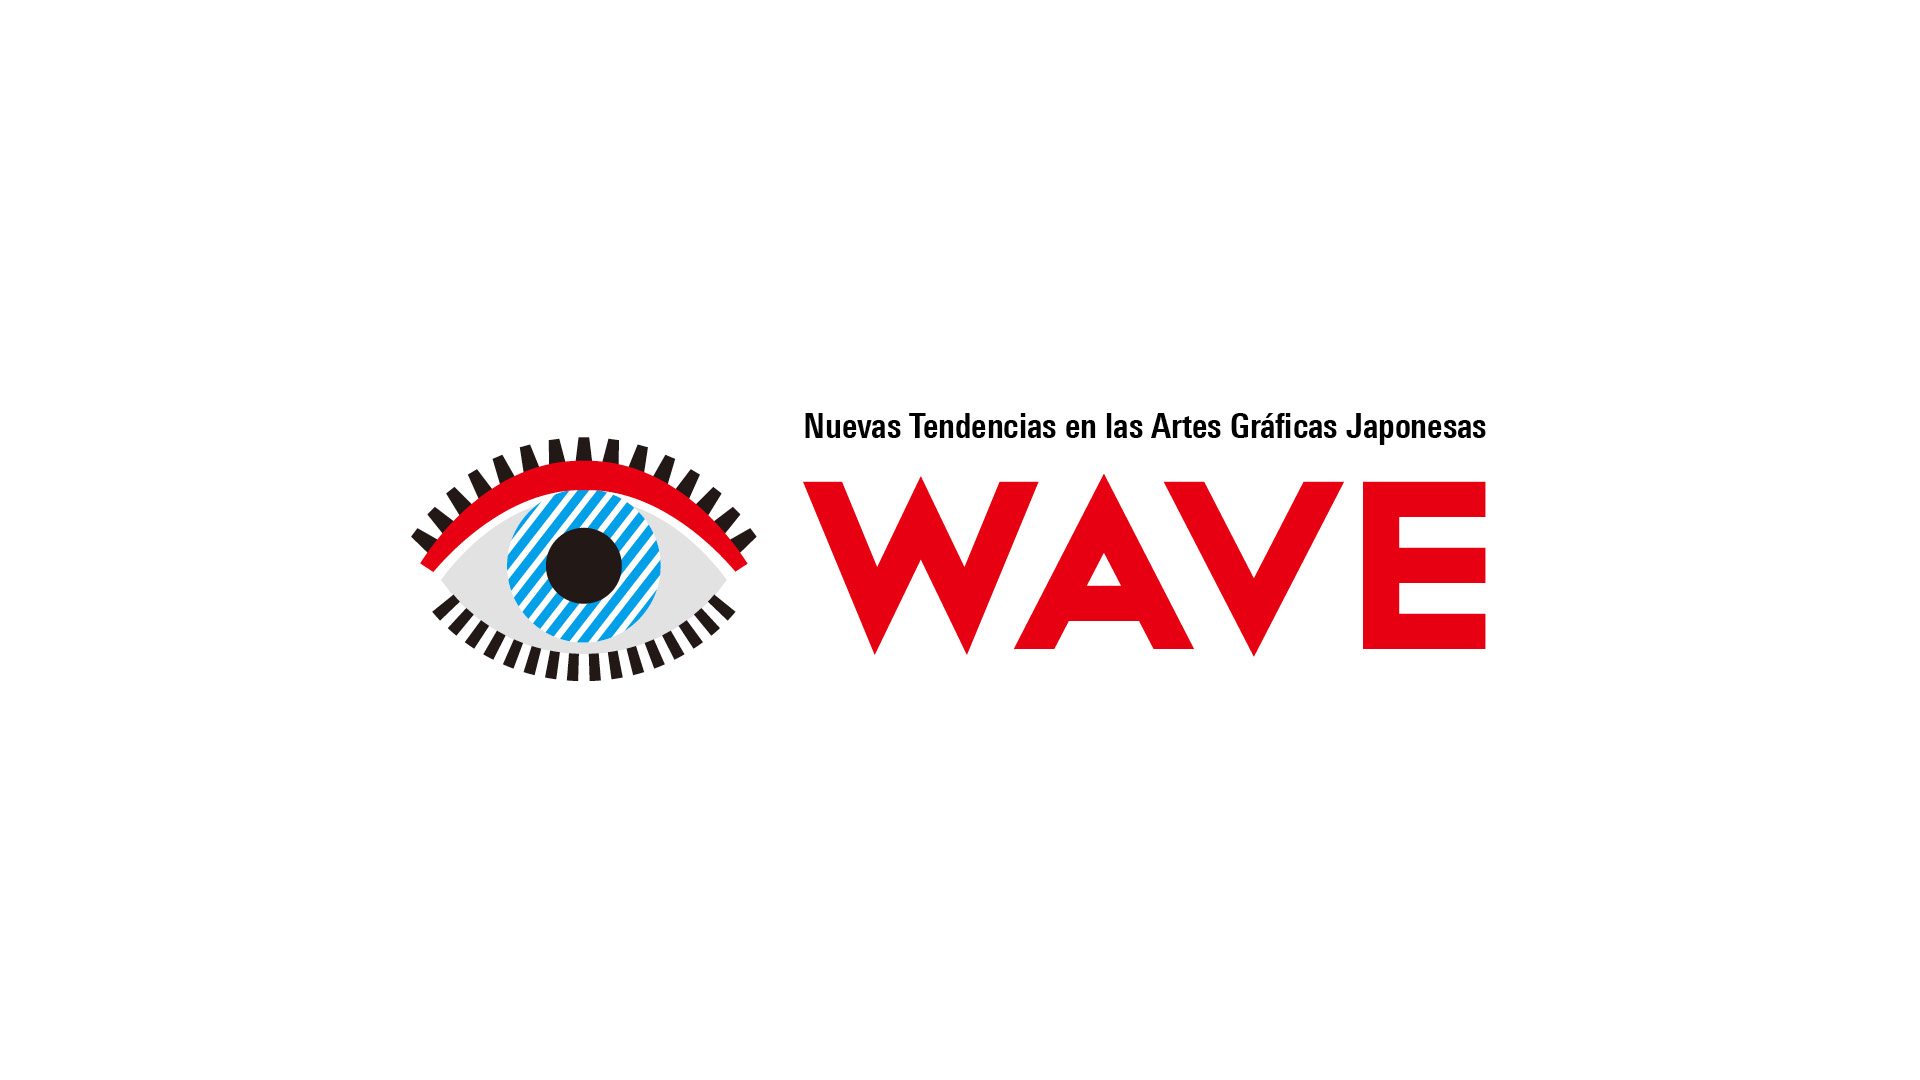 WAVE - Nuevas Tendencias en las Artes Gráficas Japonesas